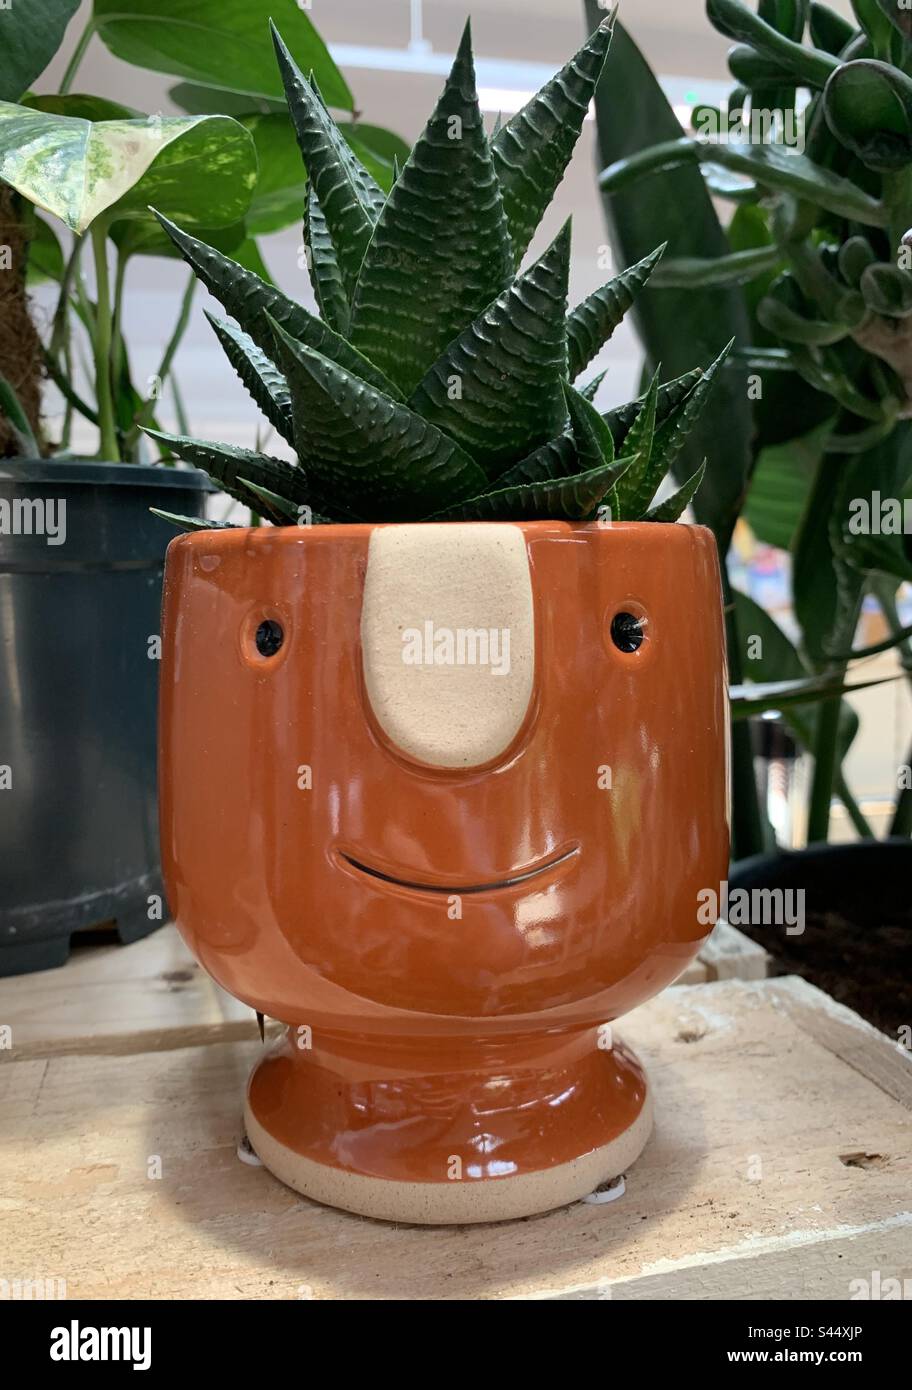 Keramiktopf mit einer saftigen Pflanze im Inneren und einem lächelnden Gesicht. Stockfoto